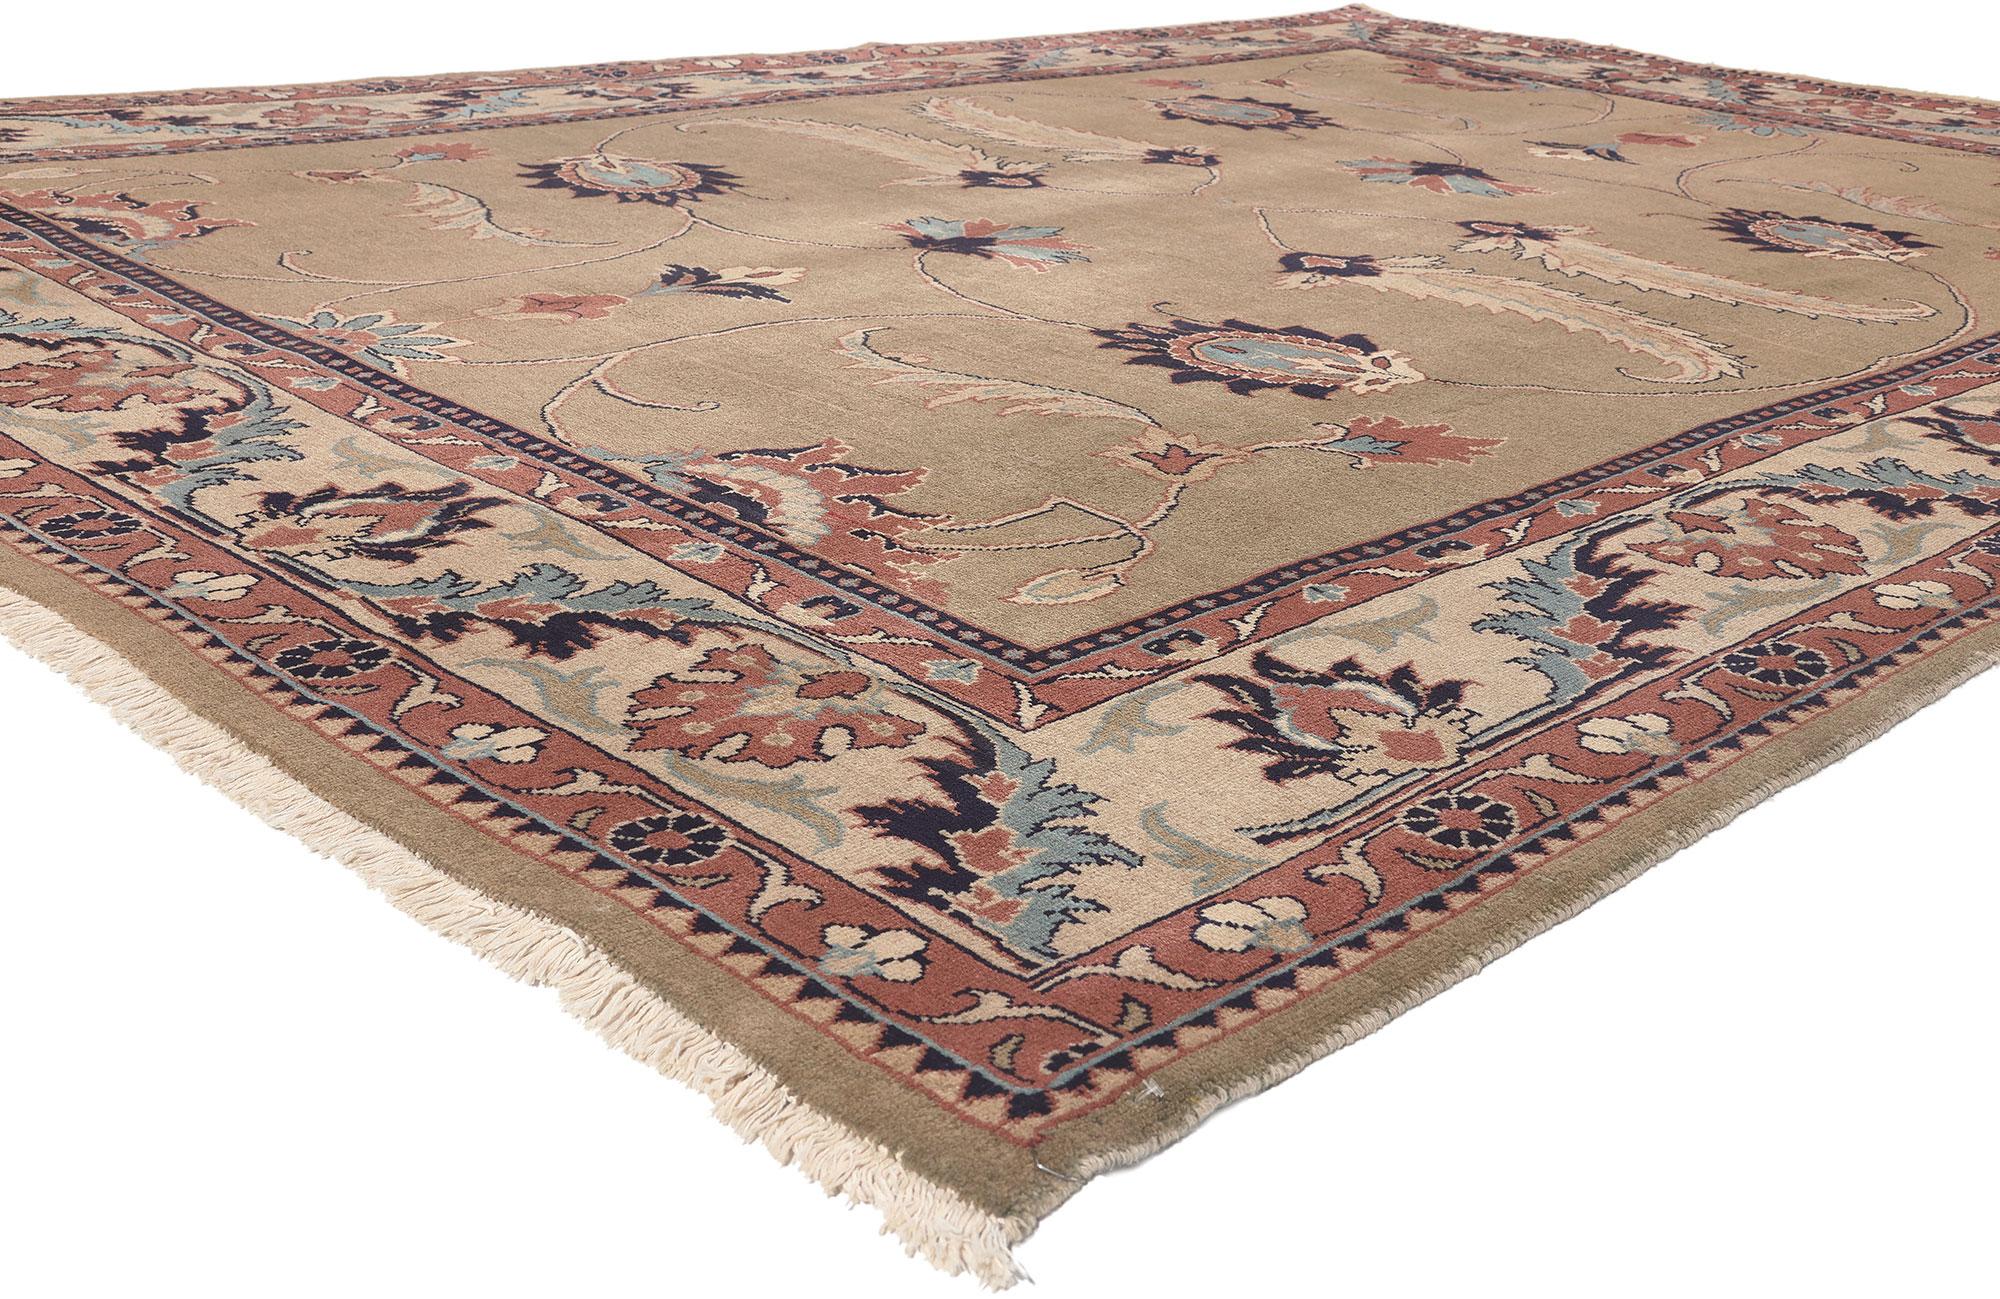 75086 Vintage Persian Mahal Teppich, 08'05 x 12'00. 
Jugendstil trifft auf biophiles Design in diesem handgeknüpften persischen Mahal-Teppich aus Wolle. Die naturalistischen Designelemente und die analogen Erdtöne, die in dieses Stück eingewoben